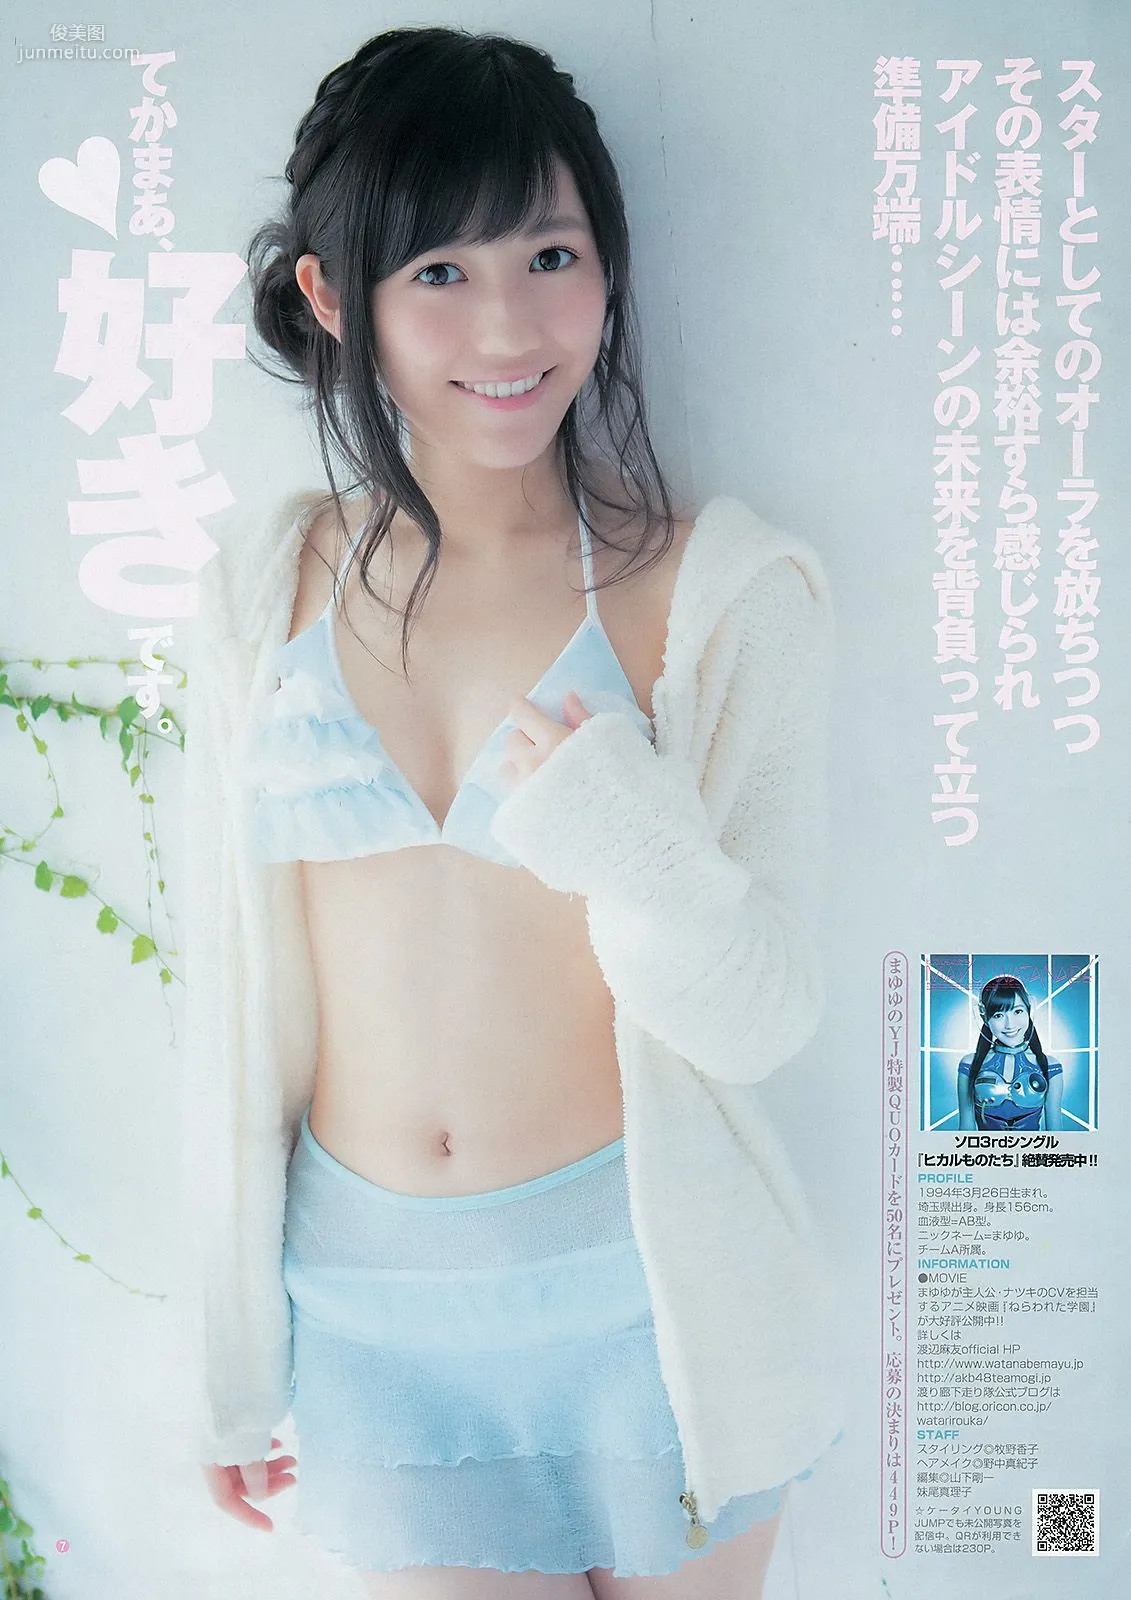 渡辺麻友 山本彩 [Weekly Young Jump] 2012年No.52 写真杂志8